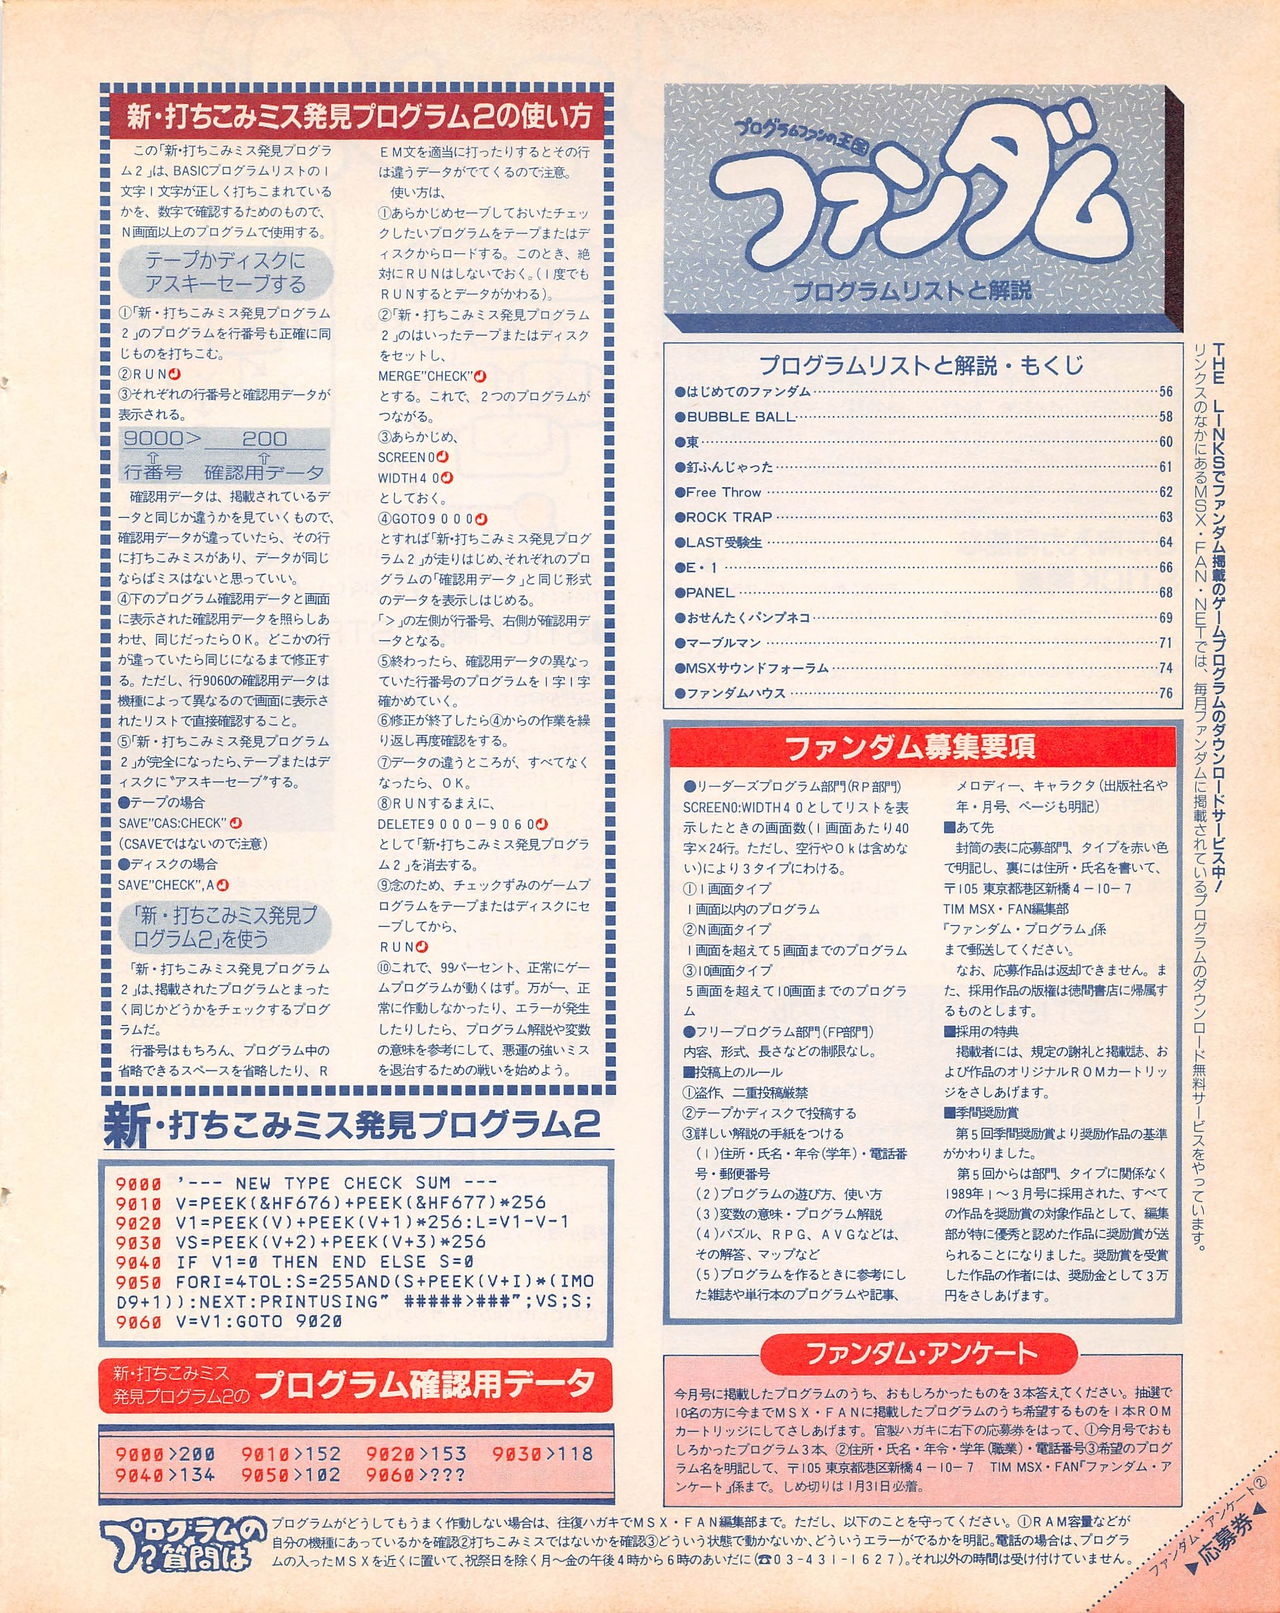 MSX Fan 1989-02 54